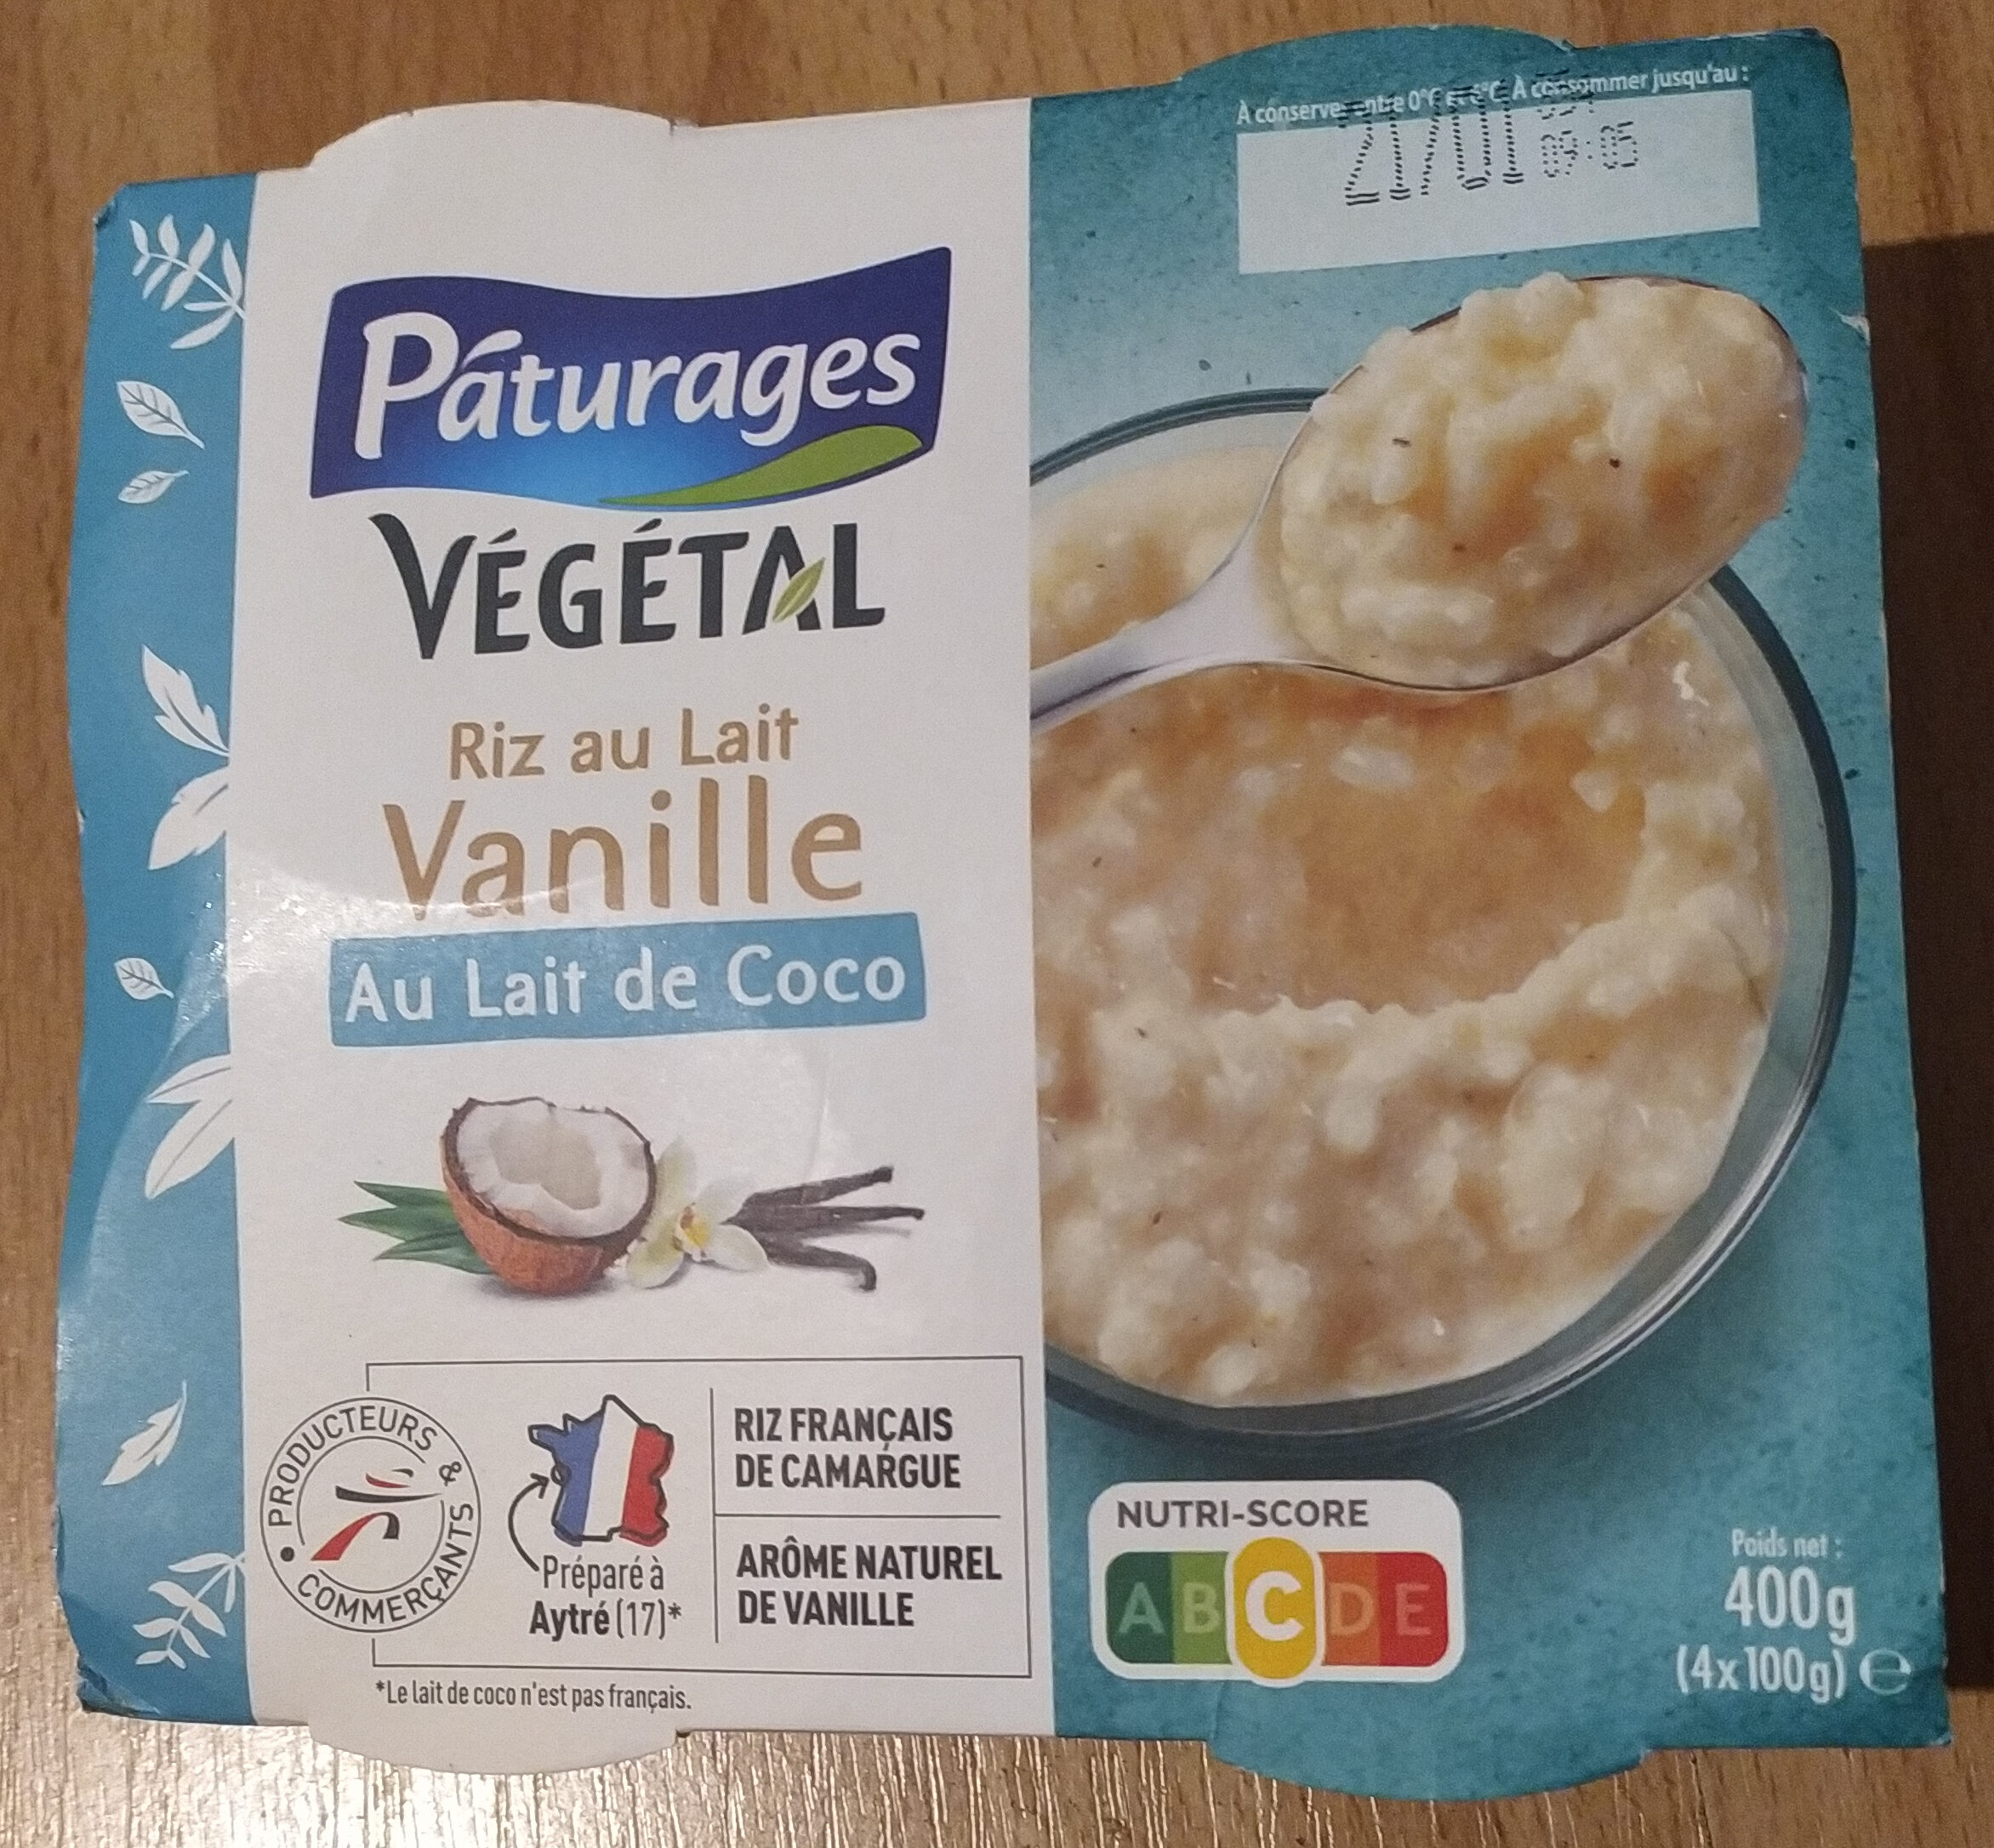 Riz au lait Vanille au lait de coco - Product - fr